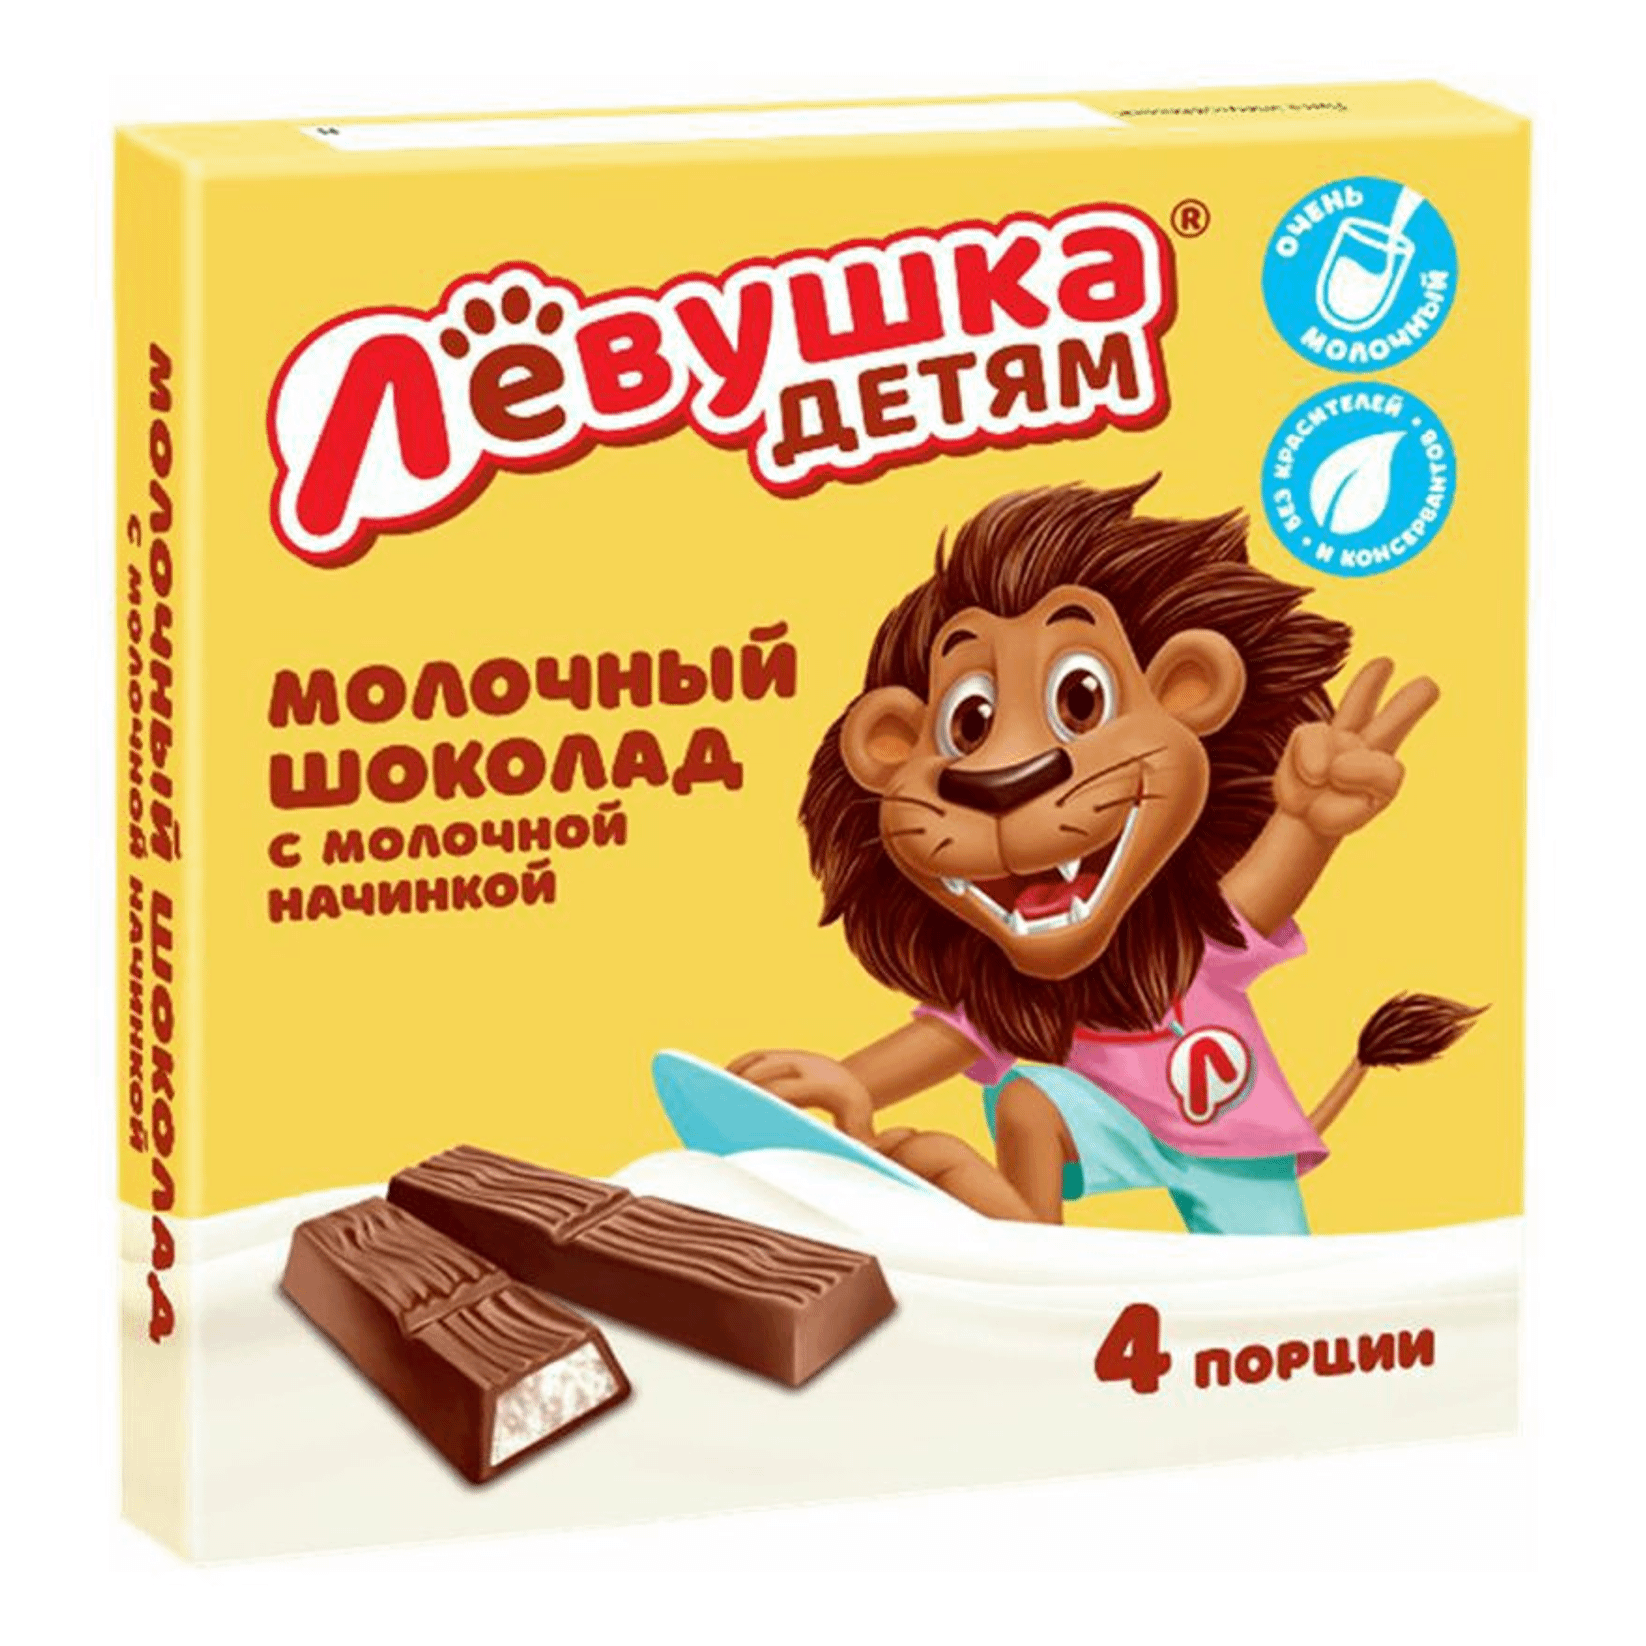 Шоколад Славянка Левушка детям молочный с молочной начинкой 50 г